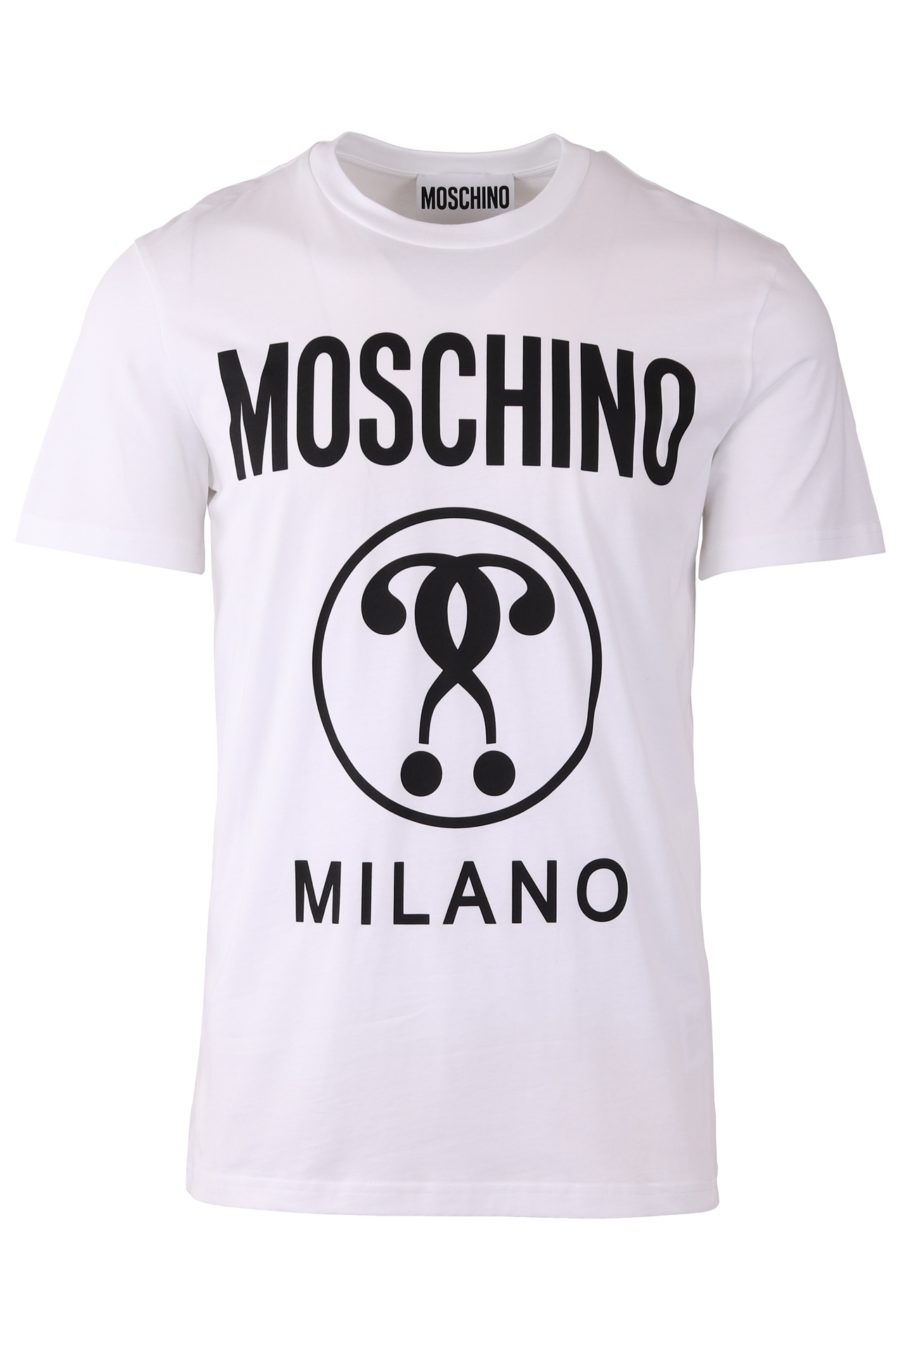 Moschino Couture reguläres weißes T-Shirt mit doppelter Logofrage - 5283ced6179d5abe89880b52e121c9f7140d53e4